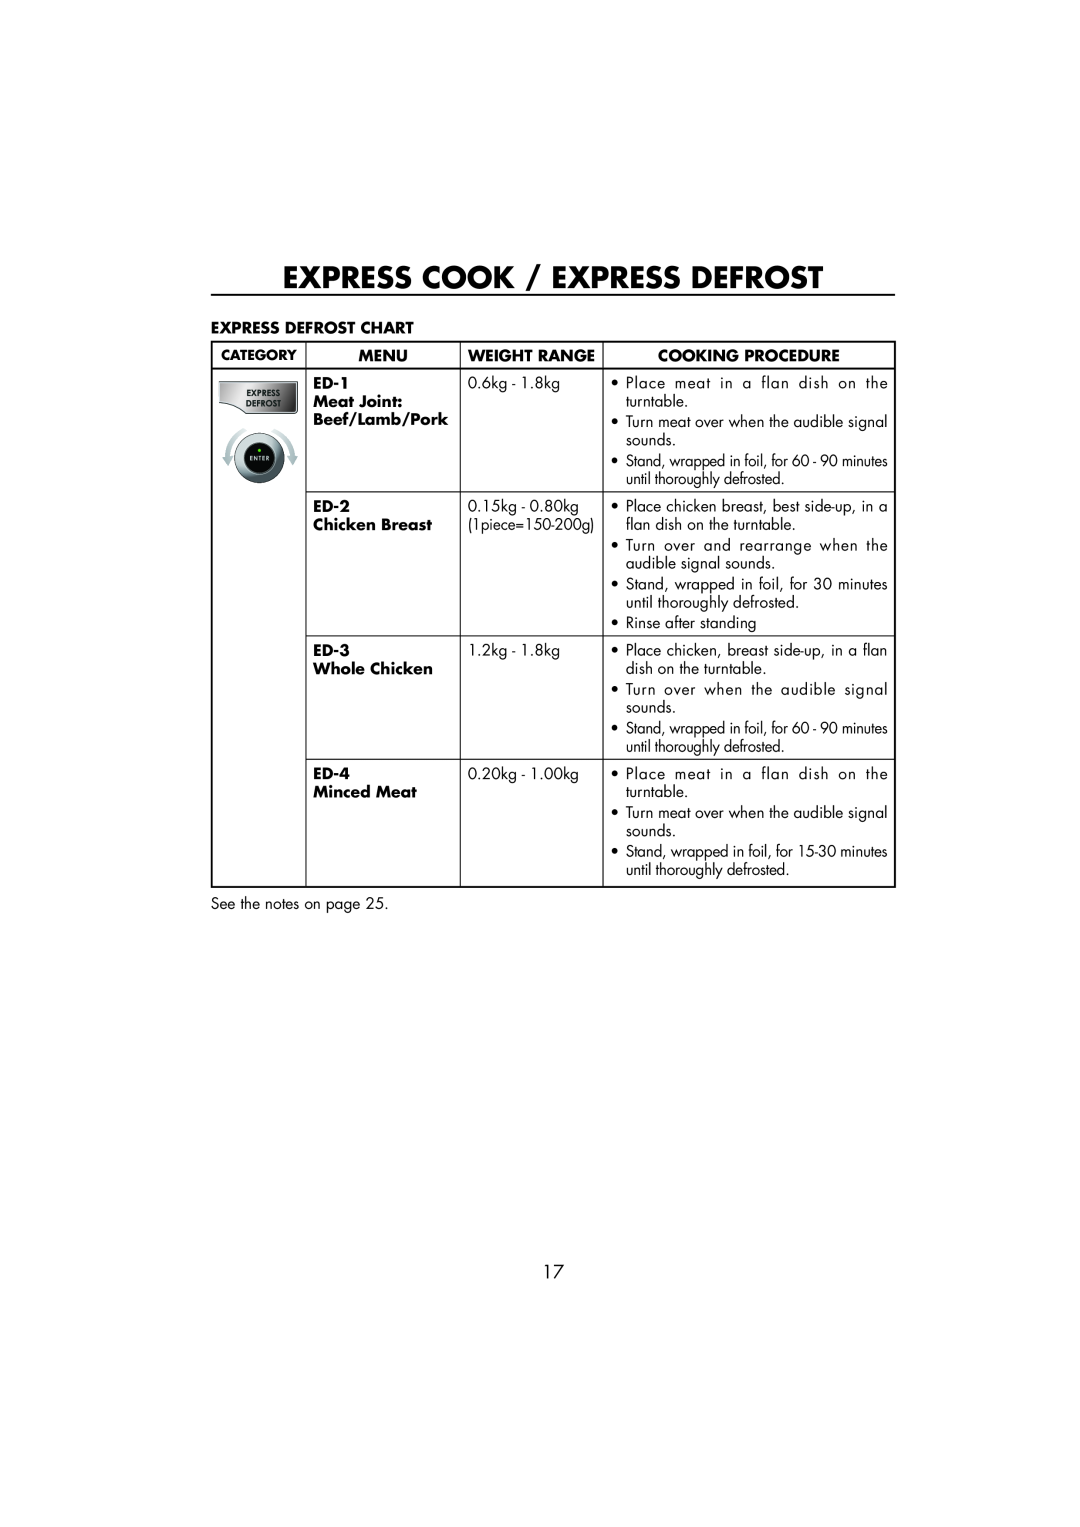 Sharp R-890SLM Express Cook / Express Defrost, Express Defrost Chart, Menu, Weight Range, Cooking Procedure, ED-1, ED-2 